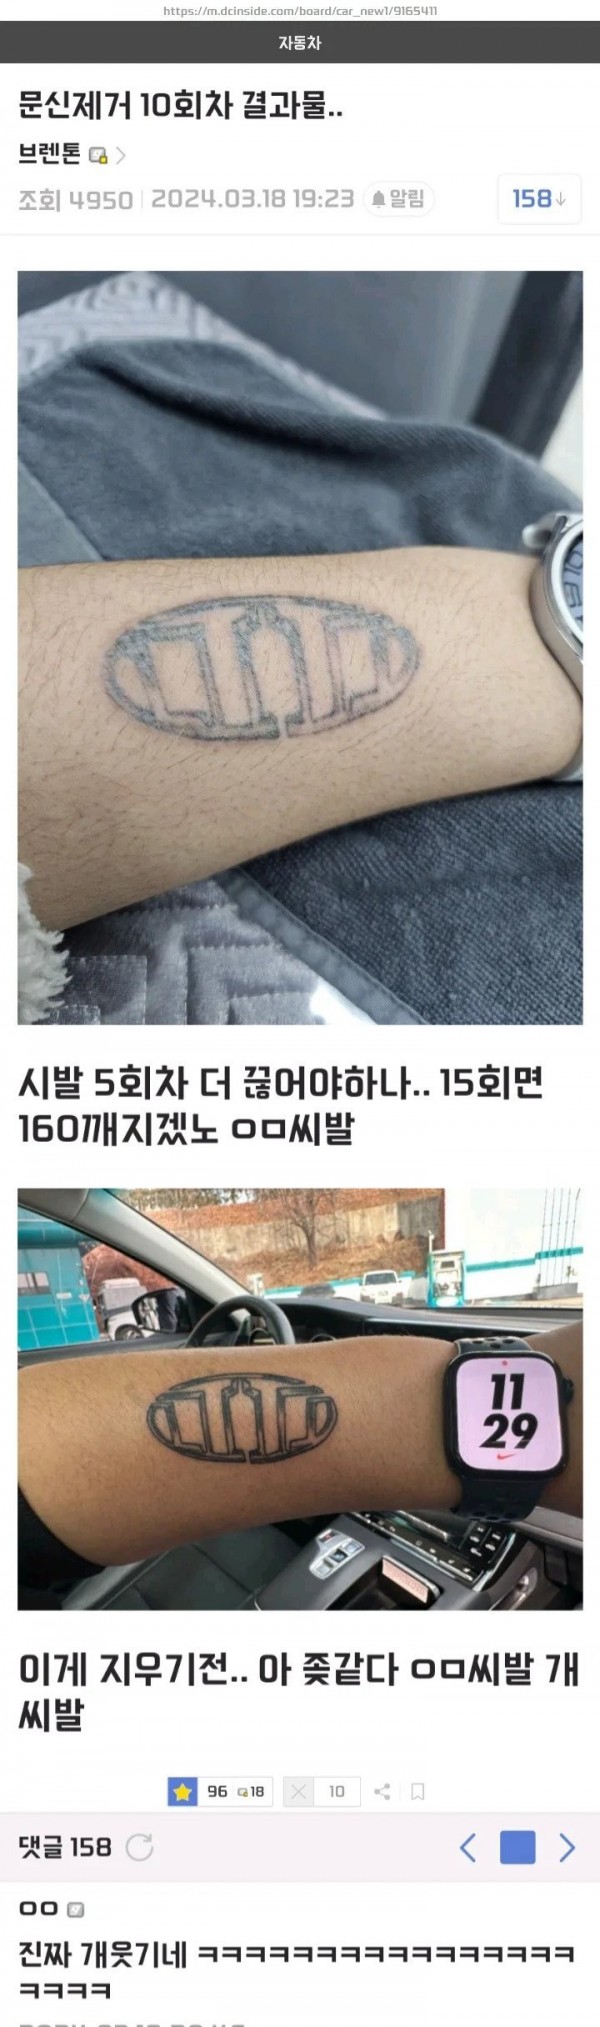 문신제거 10회차인 차갤러..